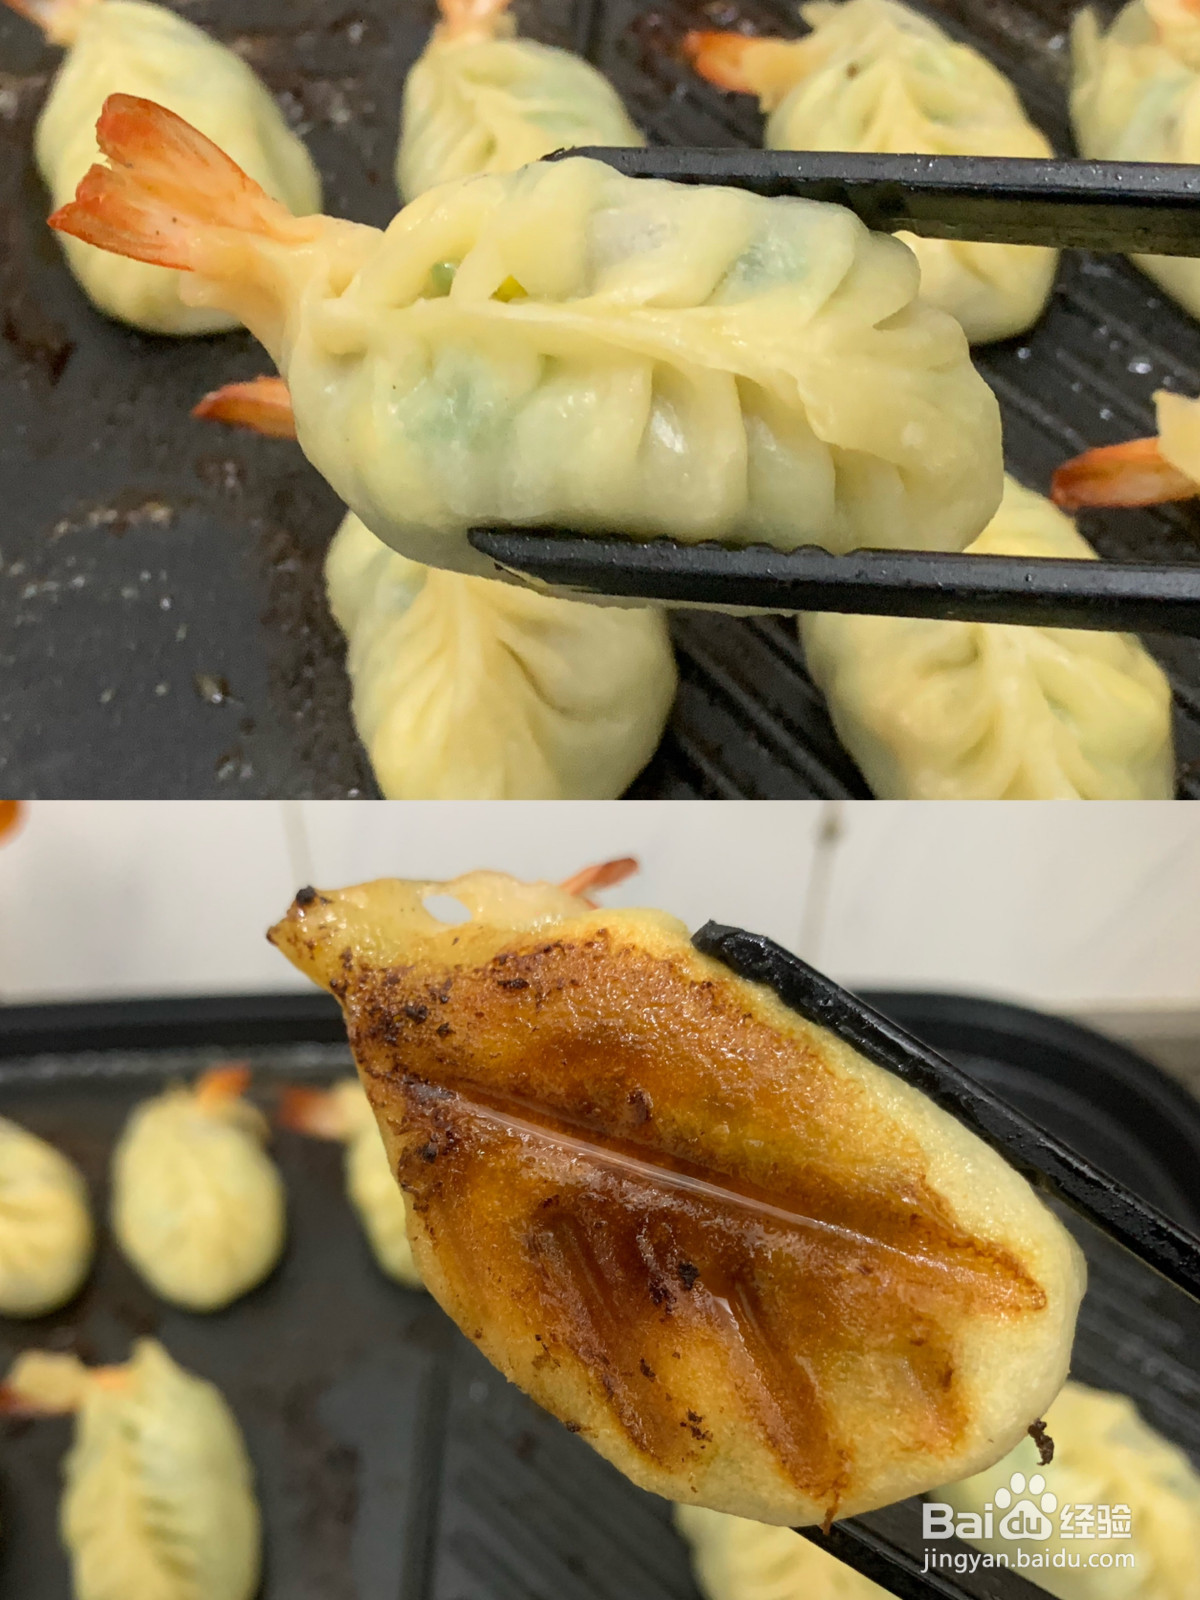 生煎烫面黄瓜虾饺的做法